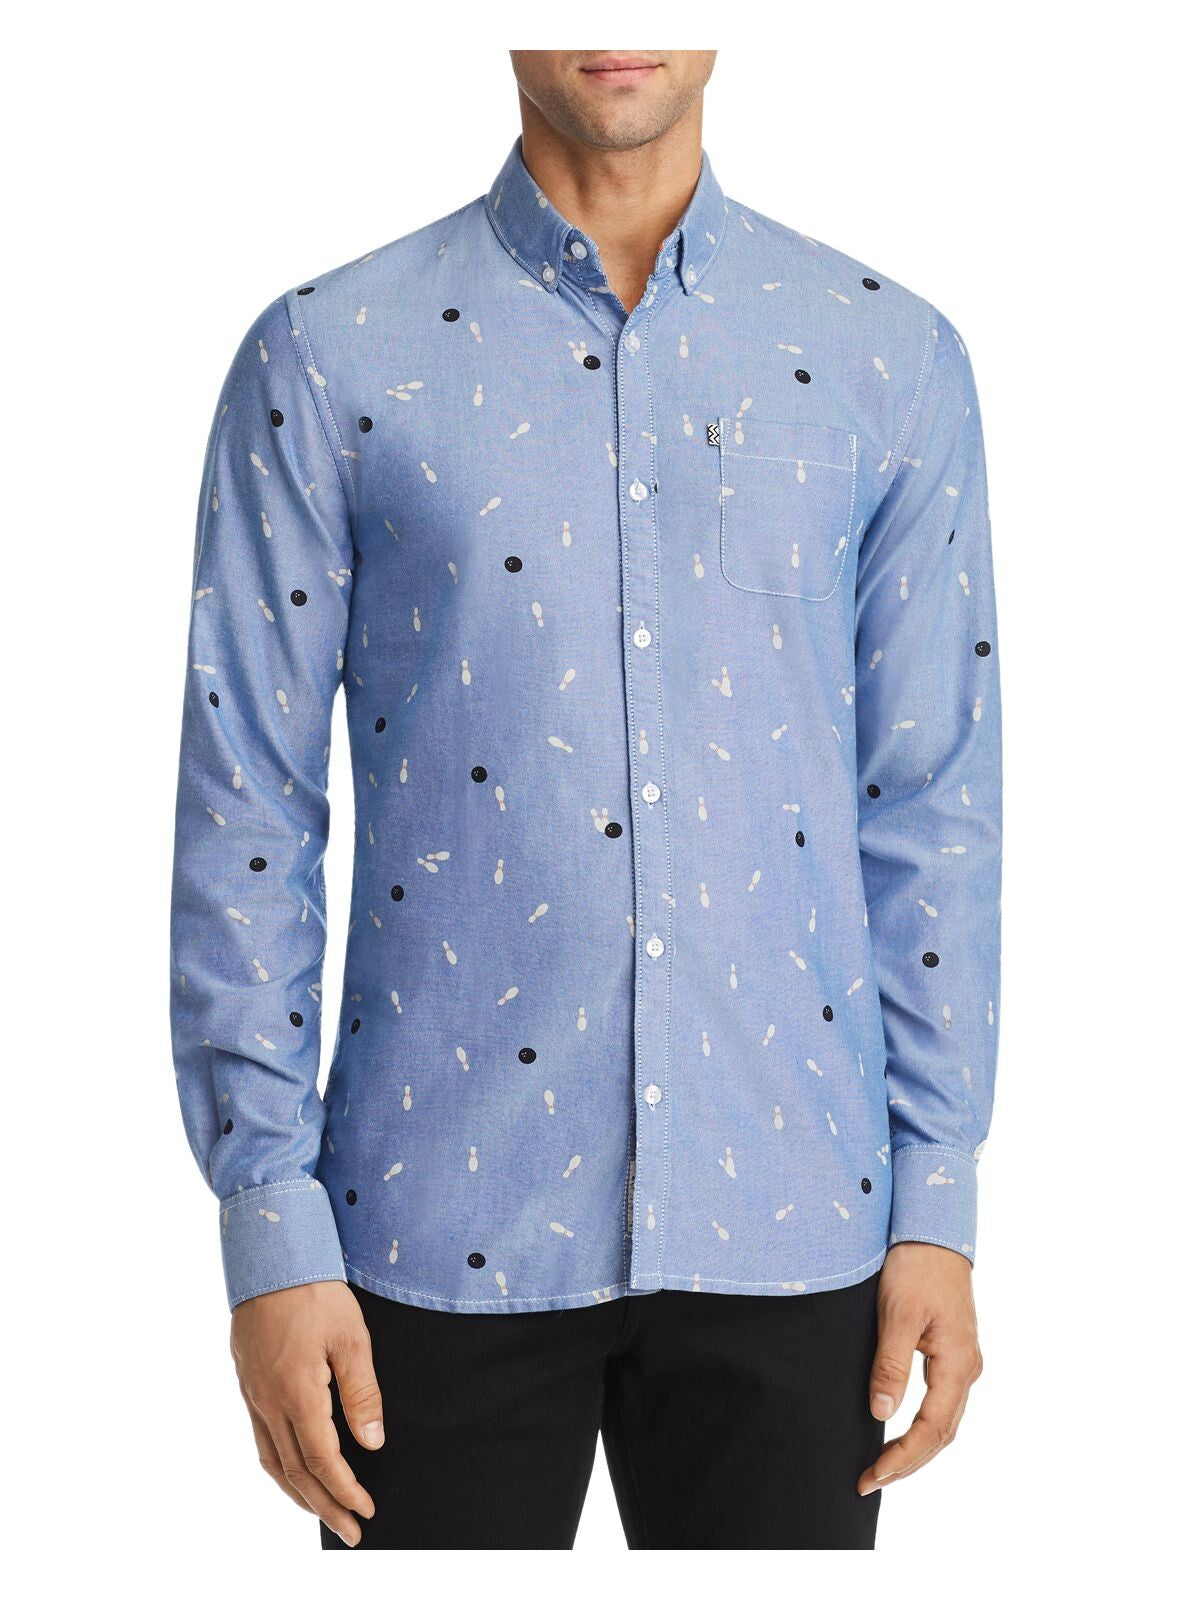 Noize Mens Light Blue Button Down Shirt XL